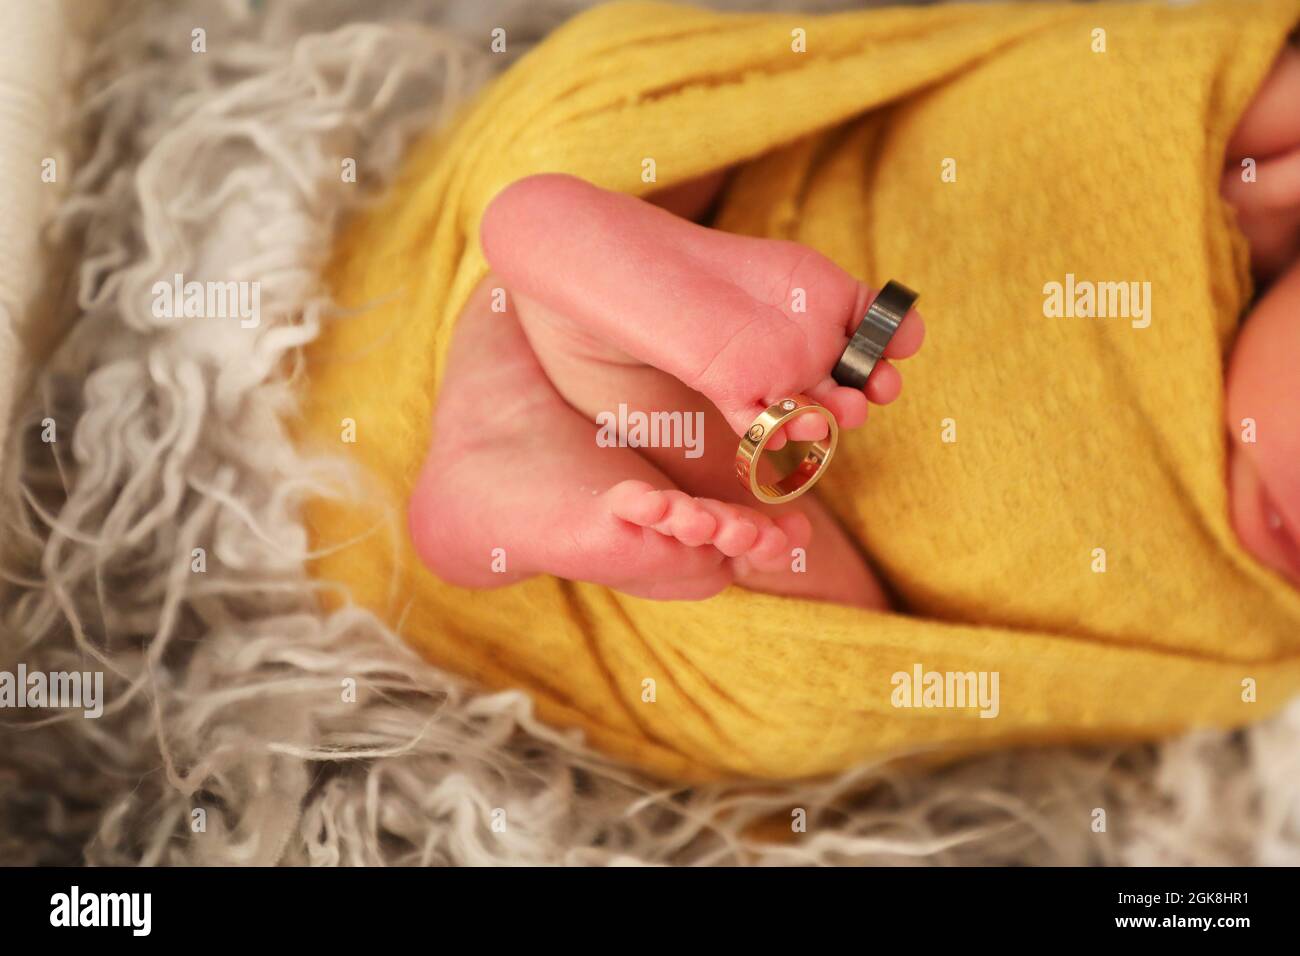 Nahaufnahme der Füße eines neugeborenen Jungen mit Ringen in Zeh und Finger, friedliches Gesundheitskonzept Stockfoto